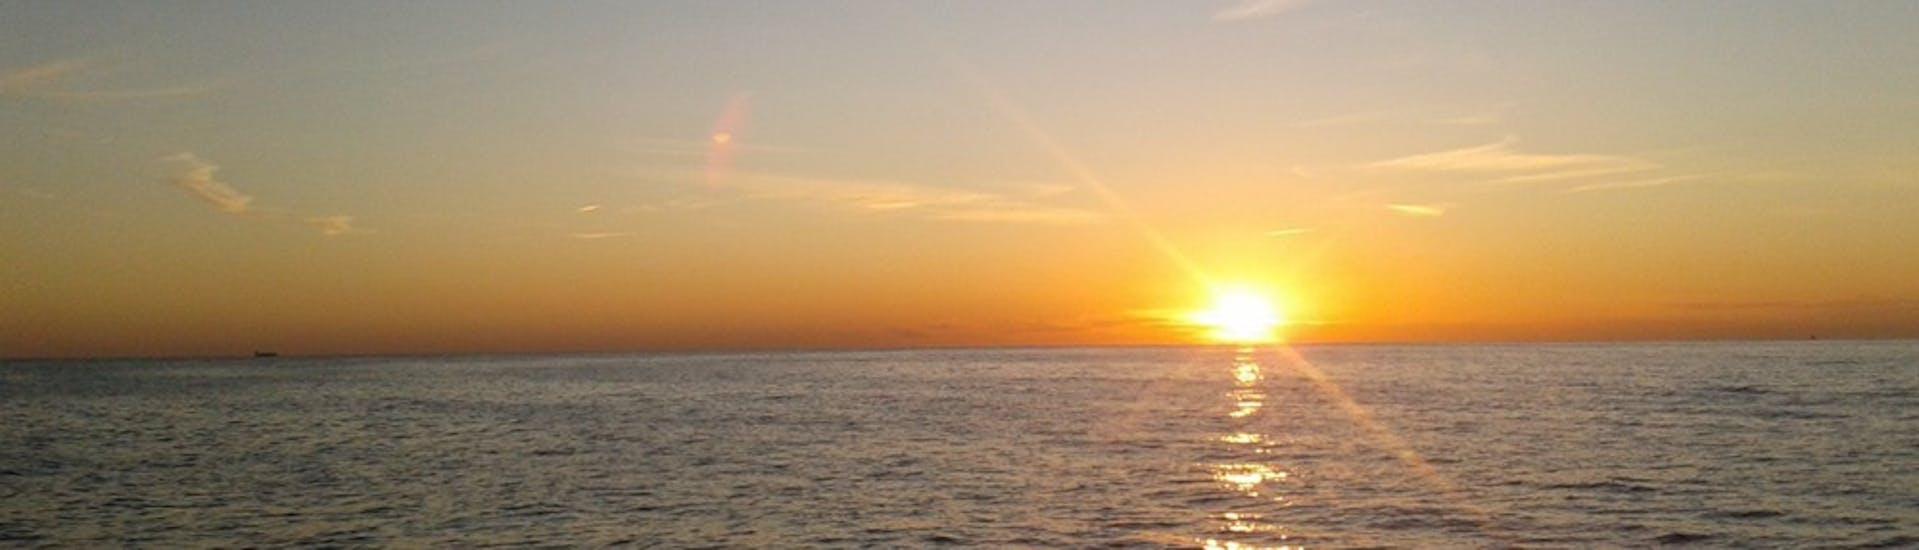 Vista de la puesta de sol en el horizonte durante un viaje en catamarán al atardecer desde Calpe con Cava.